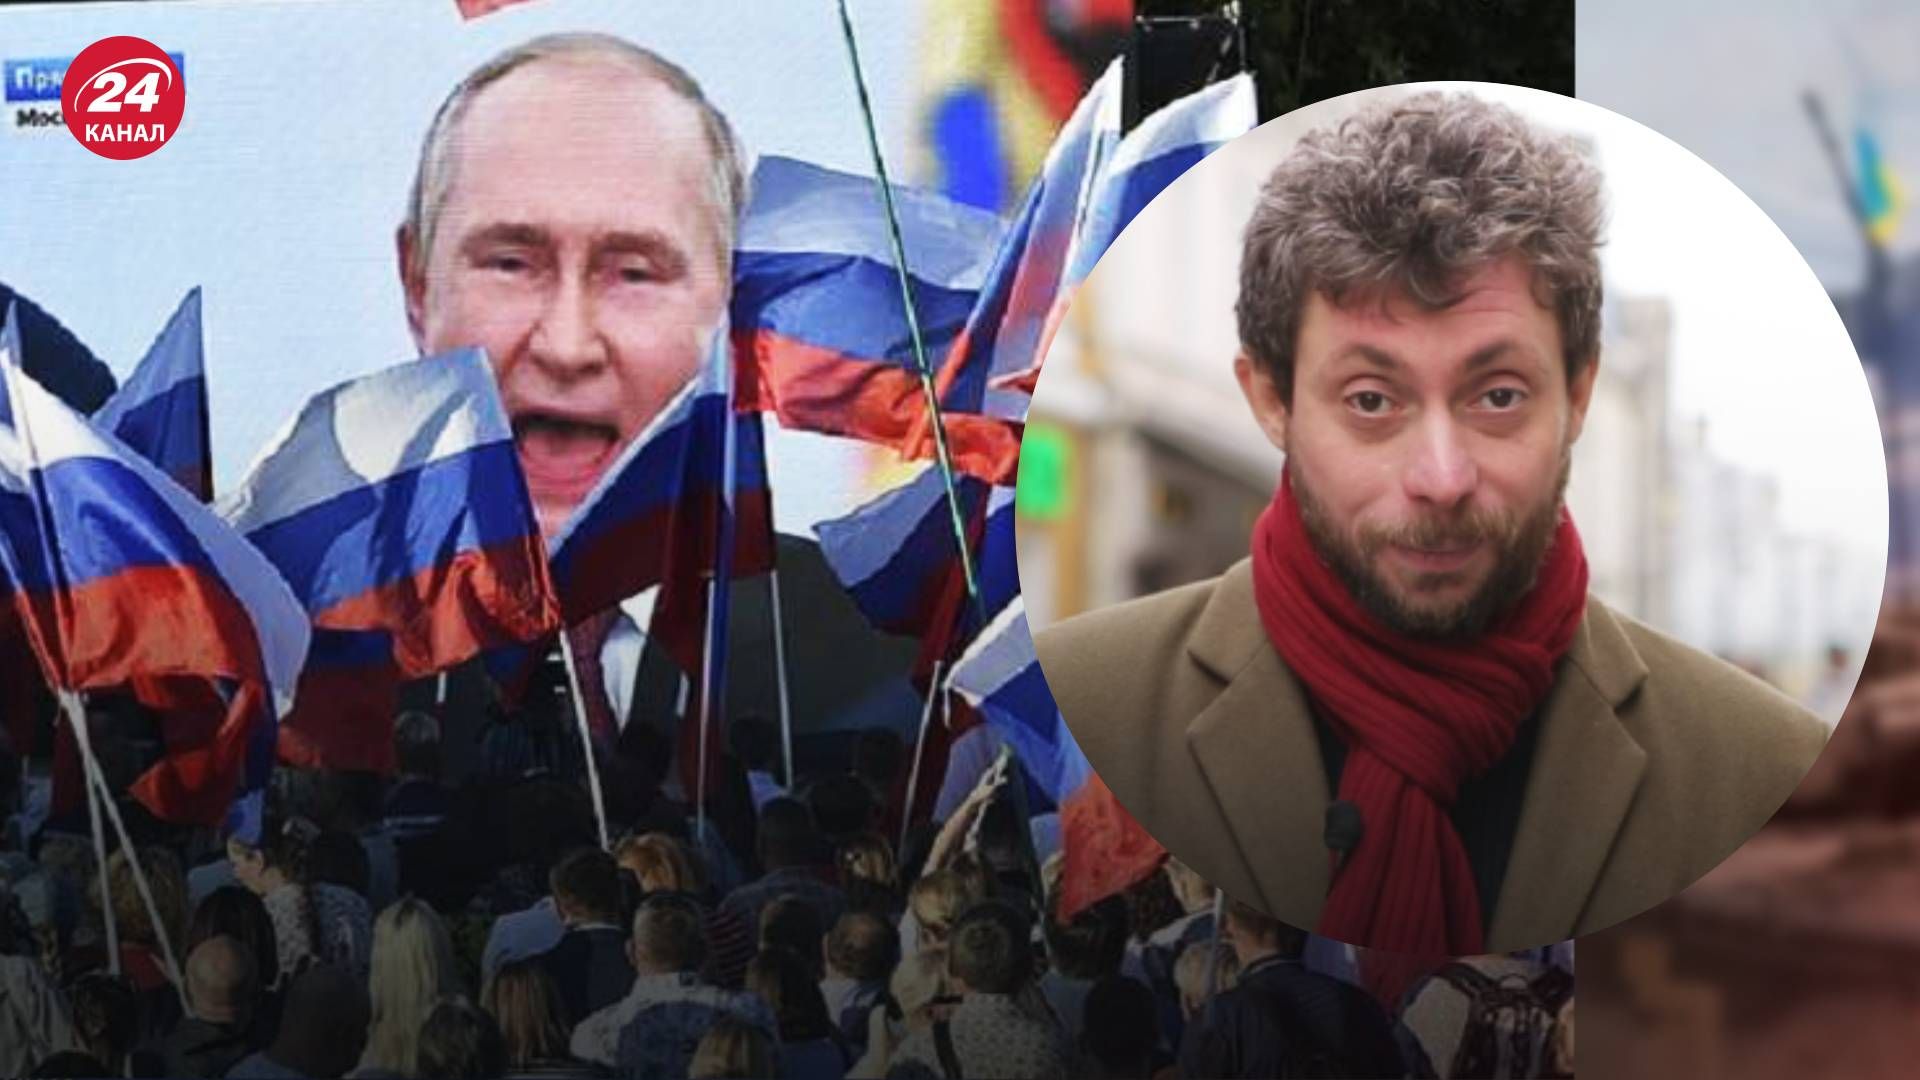 Чи є у росіян запал воювати - як змінюються настрої російського населення 